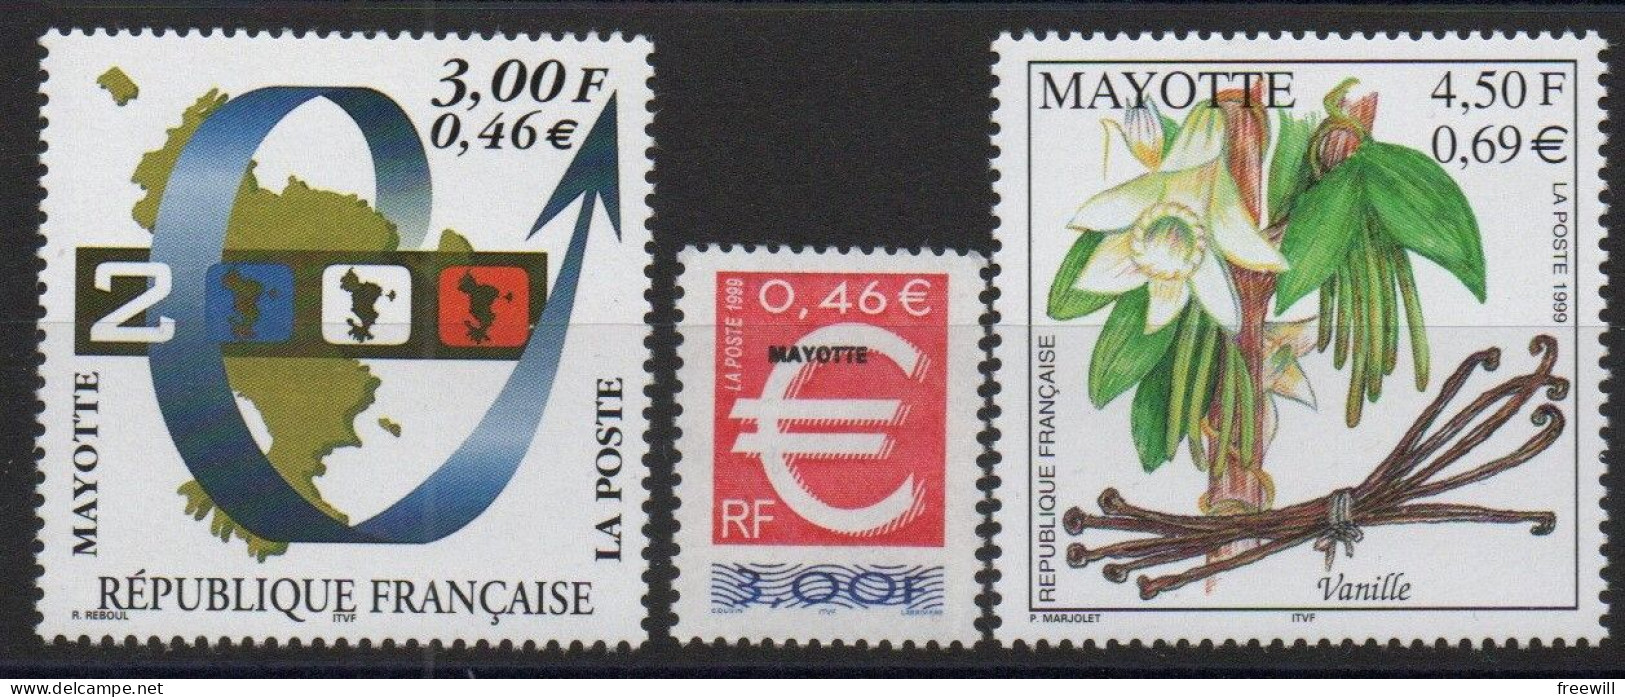 Mayotte 1999 Timbres Divers - Various Stamps -Verschillende Postzegels 1999 Xxx - Ongebruikt